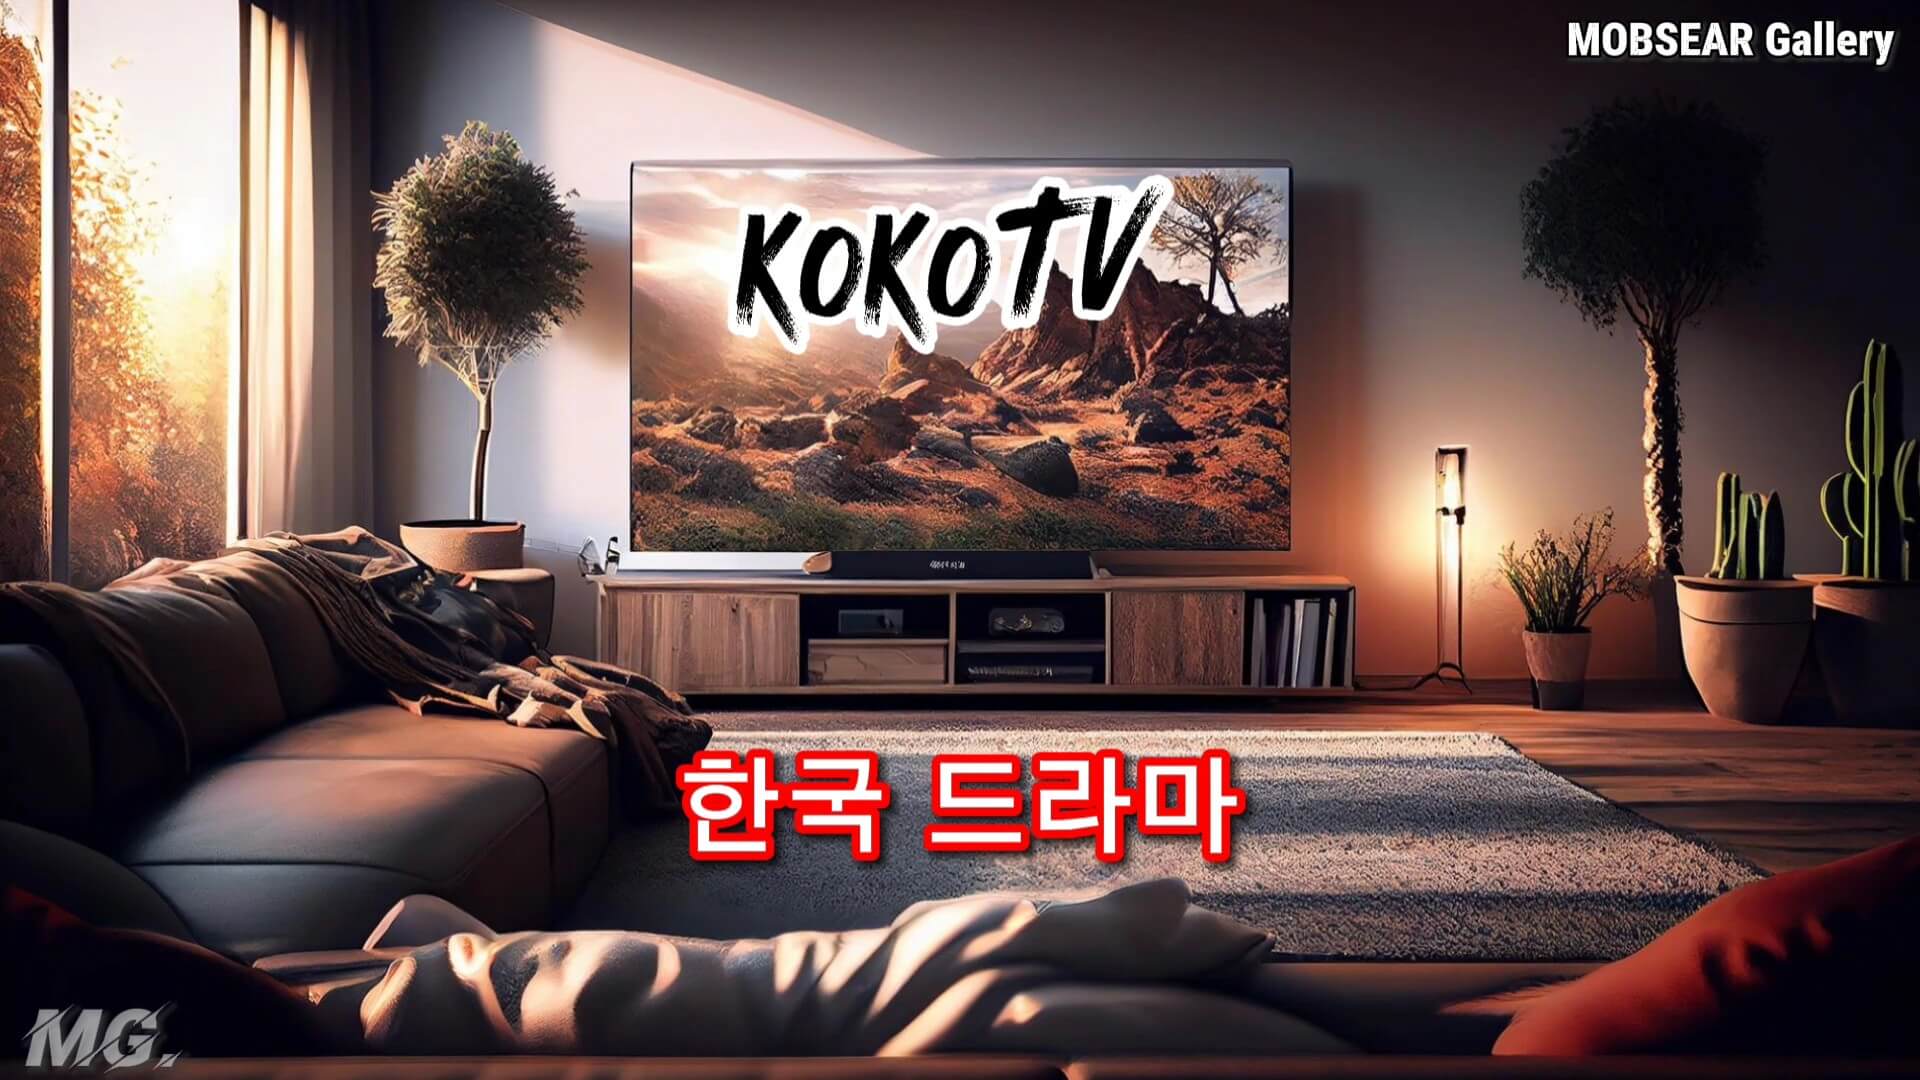 Koko TV